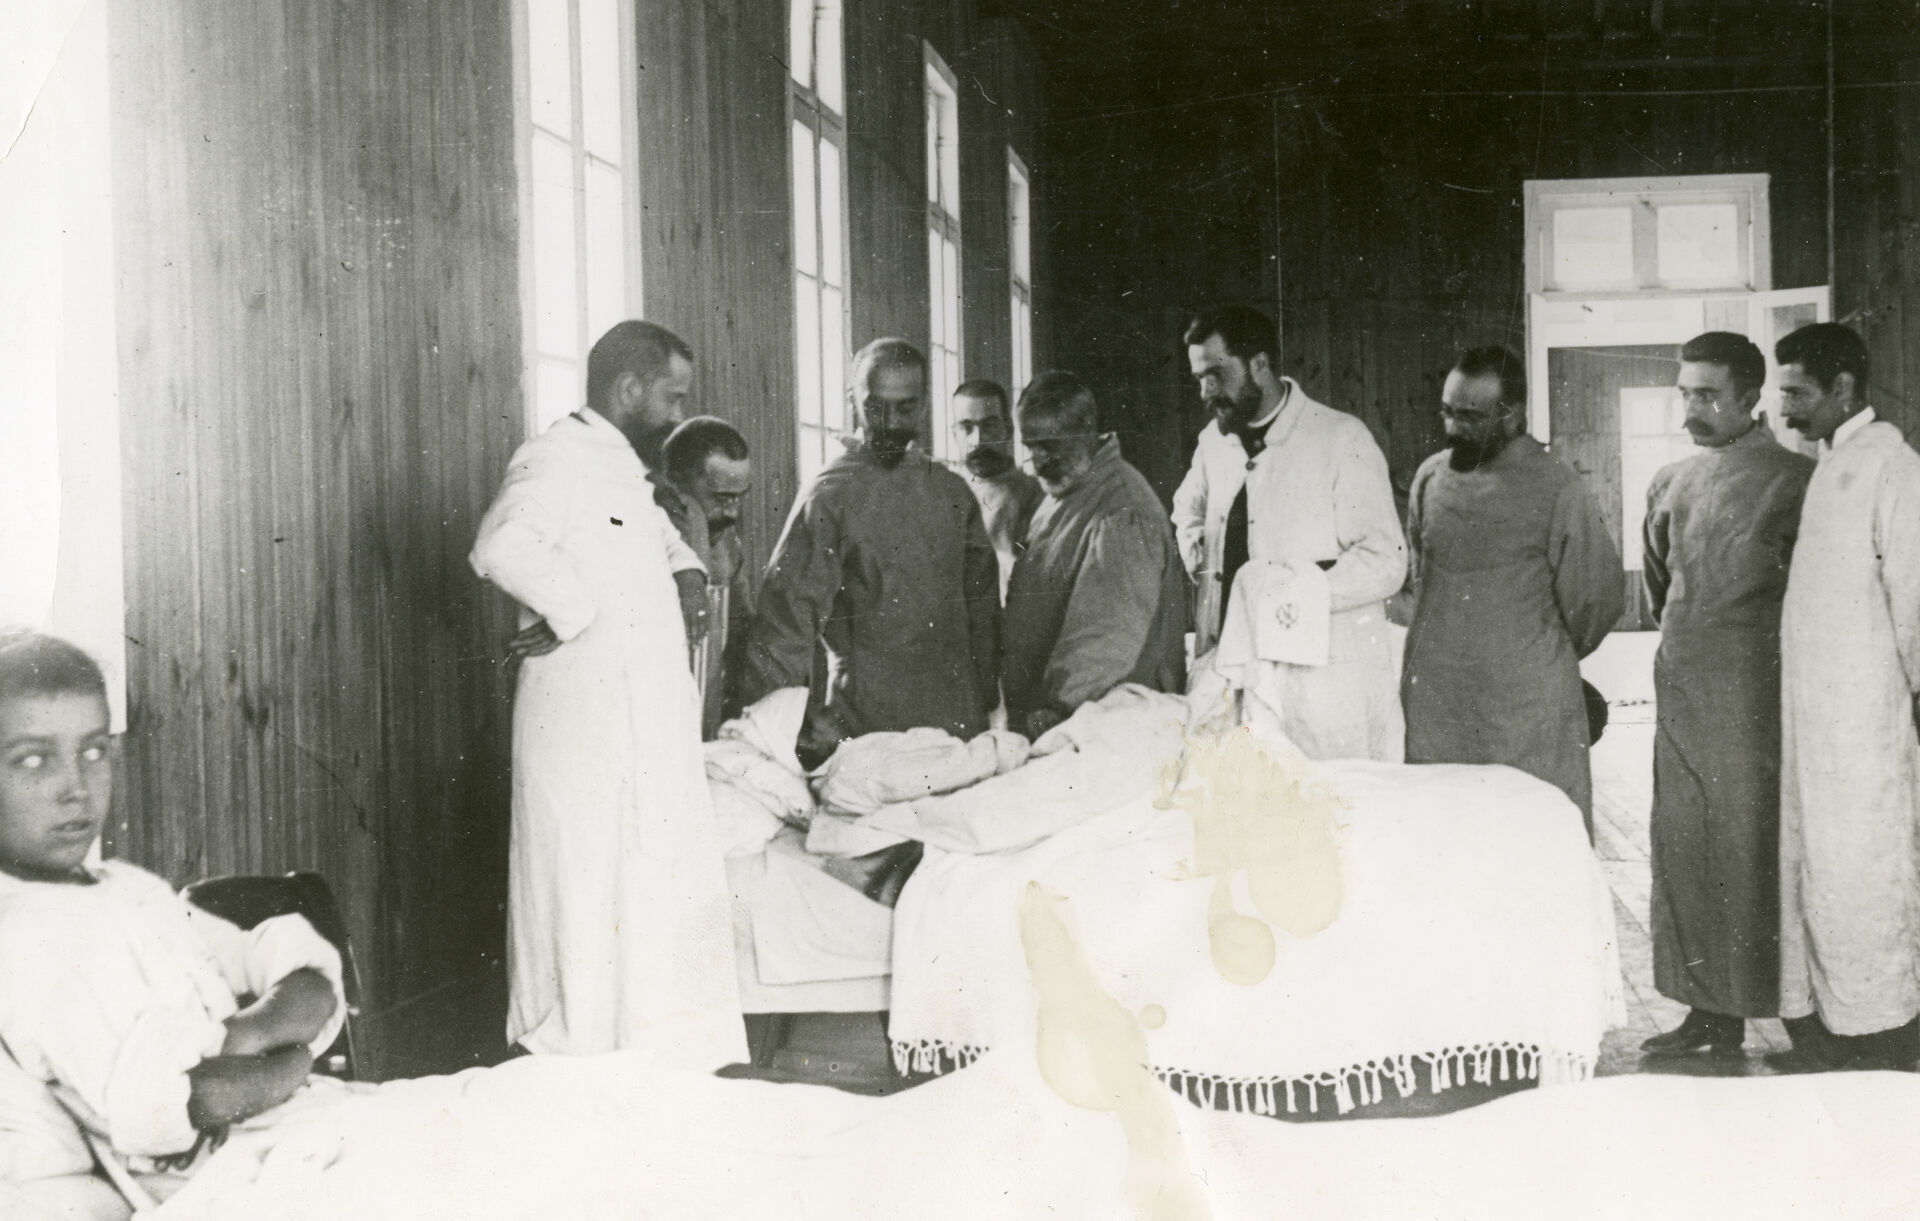 Da pesten kom til Porto i 1899 ble det opprettet egne avdelinger for pest-smittede på sykehuset.